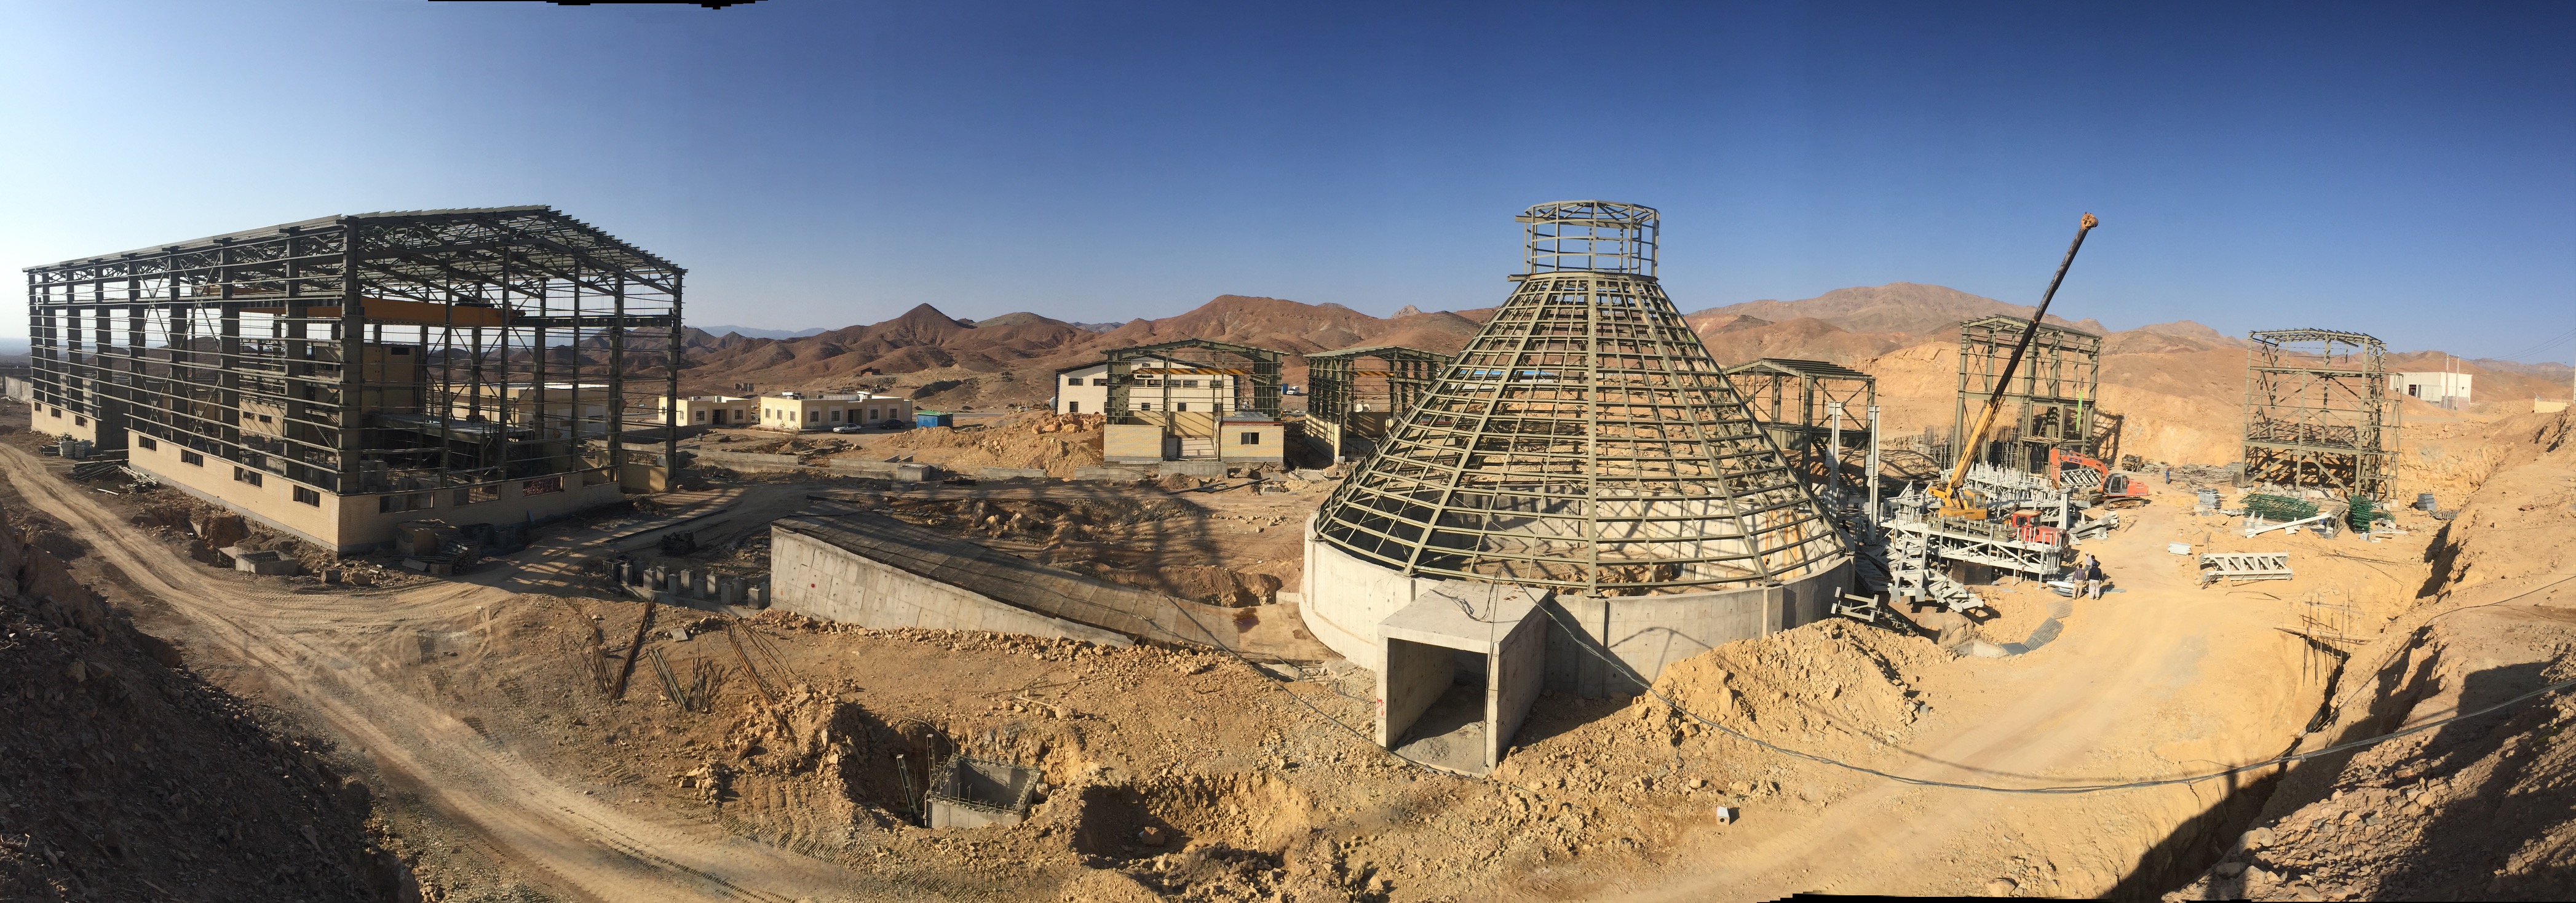 افتتاح معدن مس چهل کوره زاهدان و طرحهای مخابراتی سیستان و بلوچستان